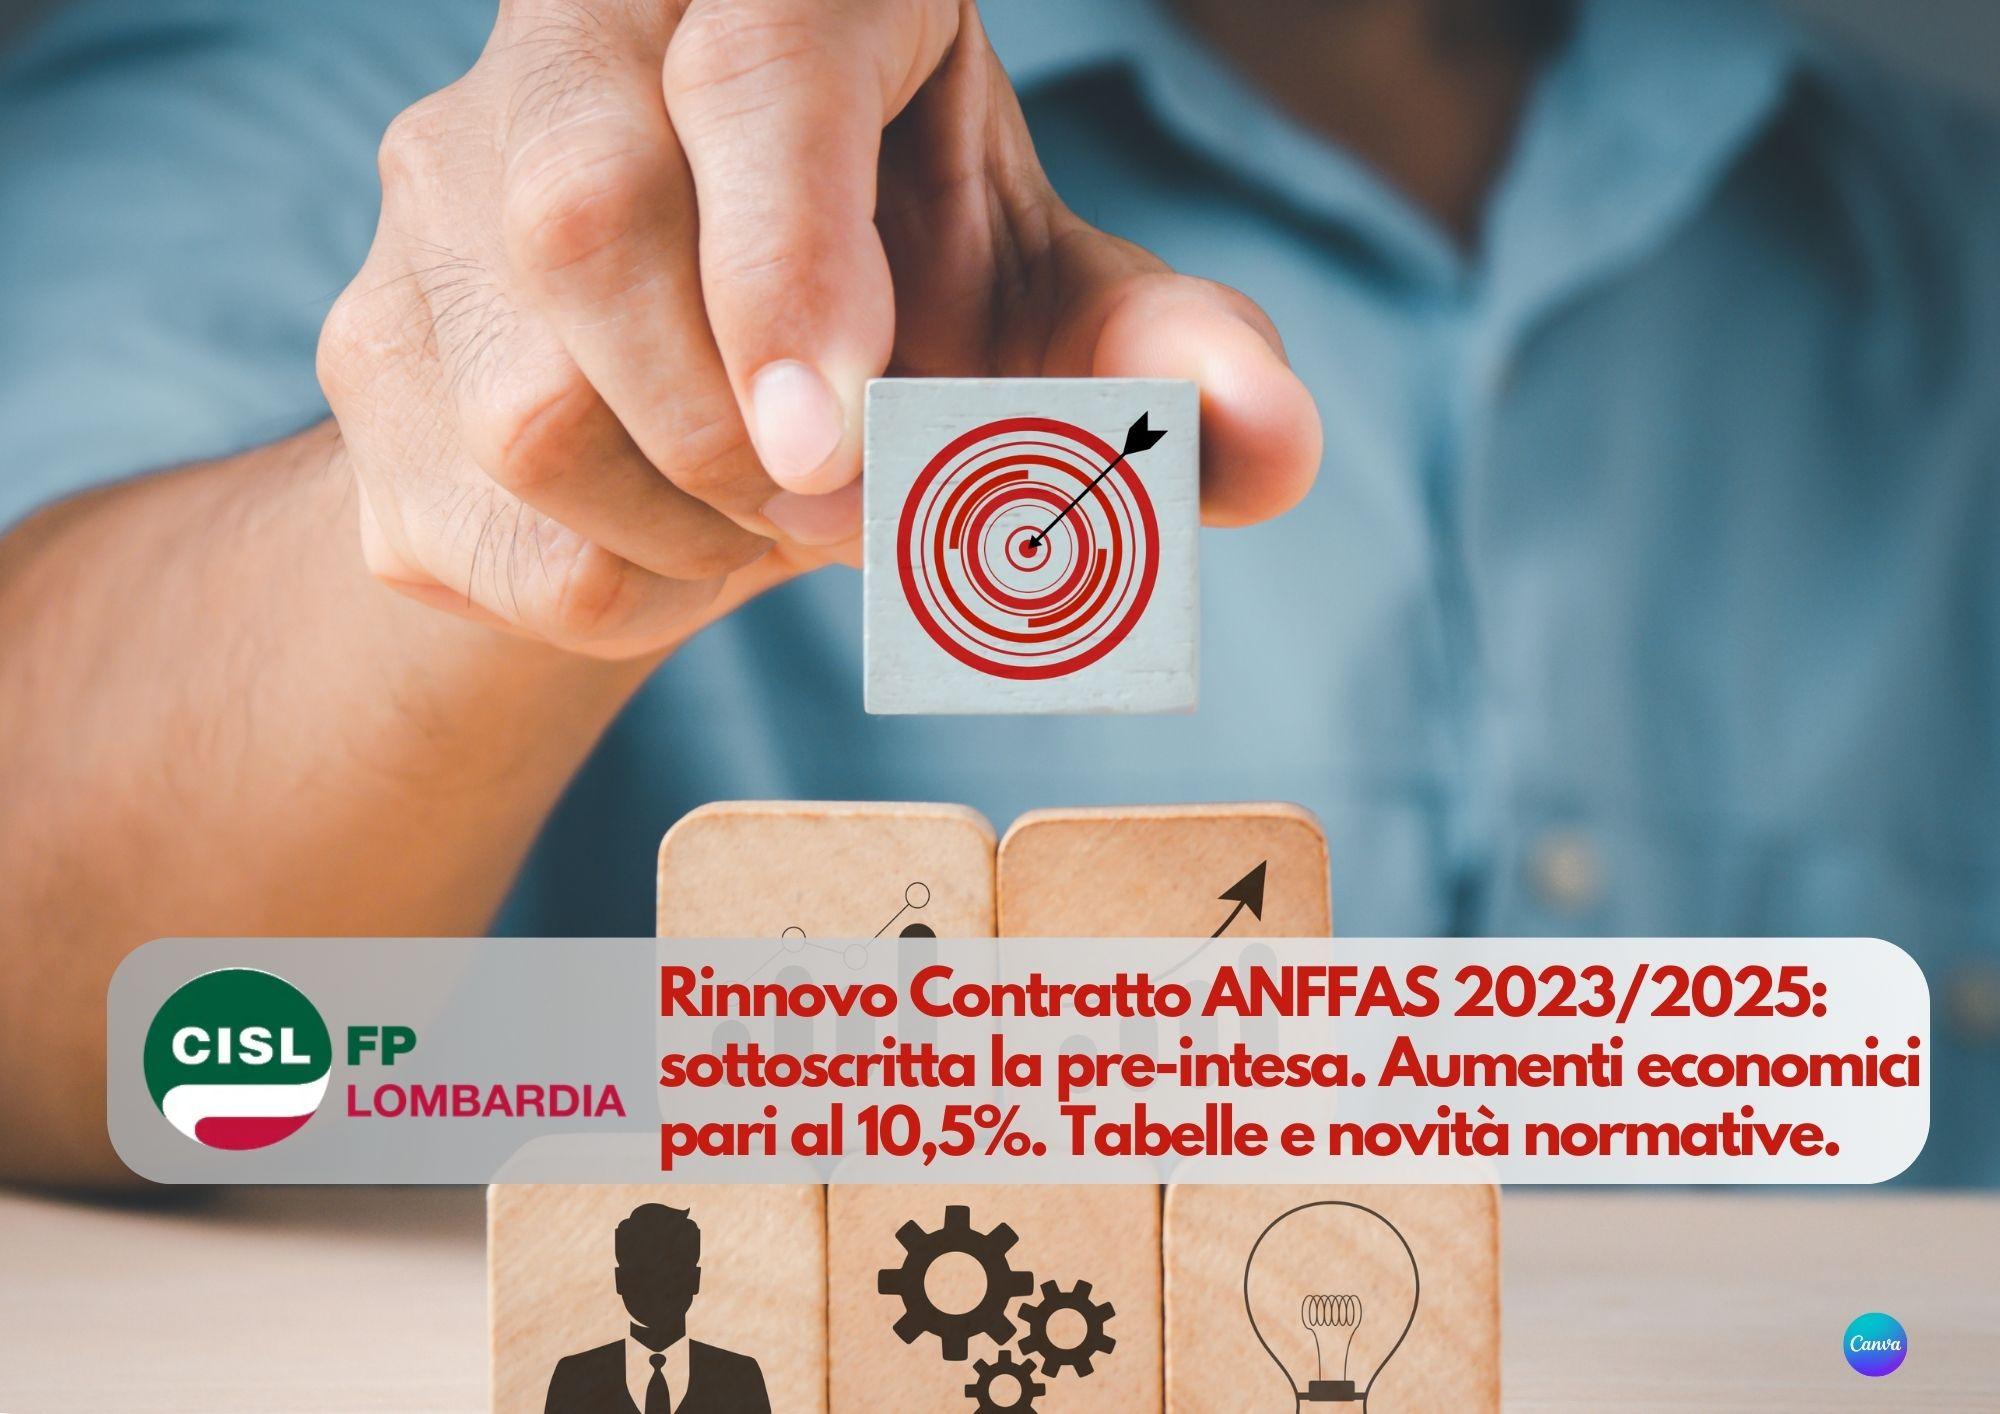 CISL FP Lombardia. Rinnovo Contratto ANFFAS 2023/2025: sottoscritta la pre-intesa. I dettagli